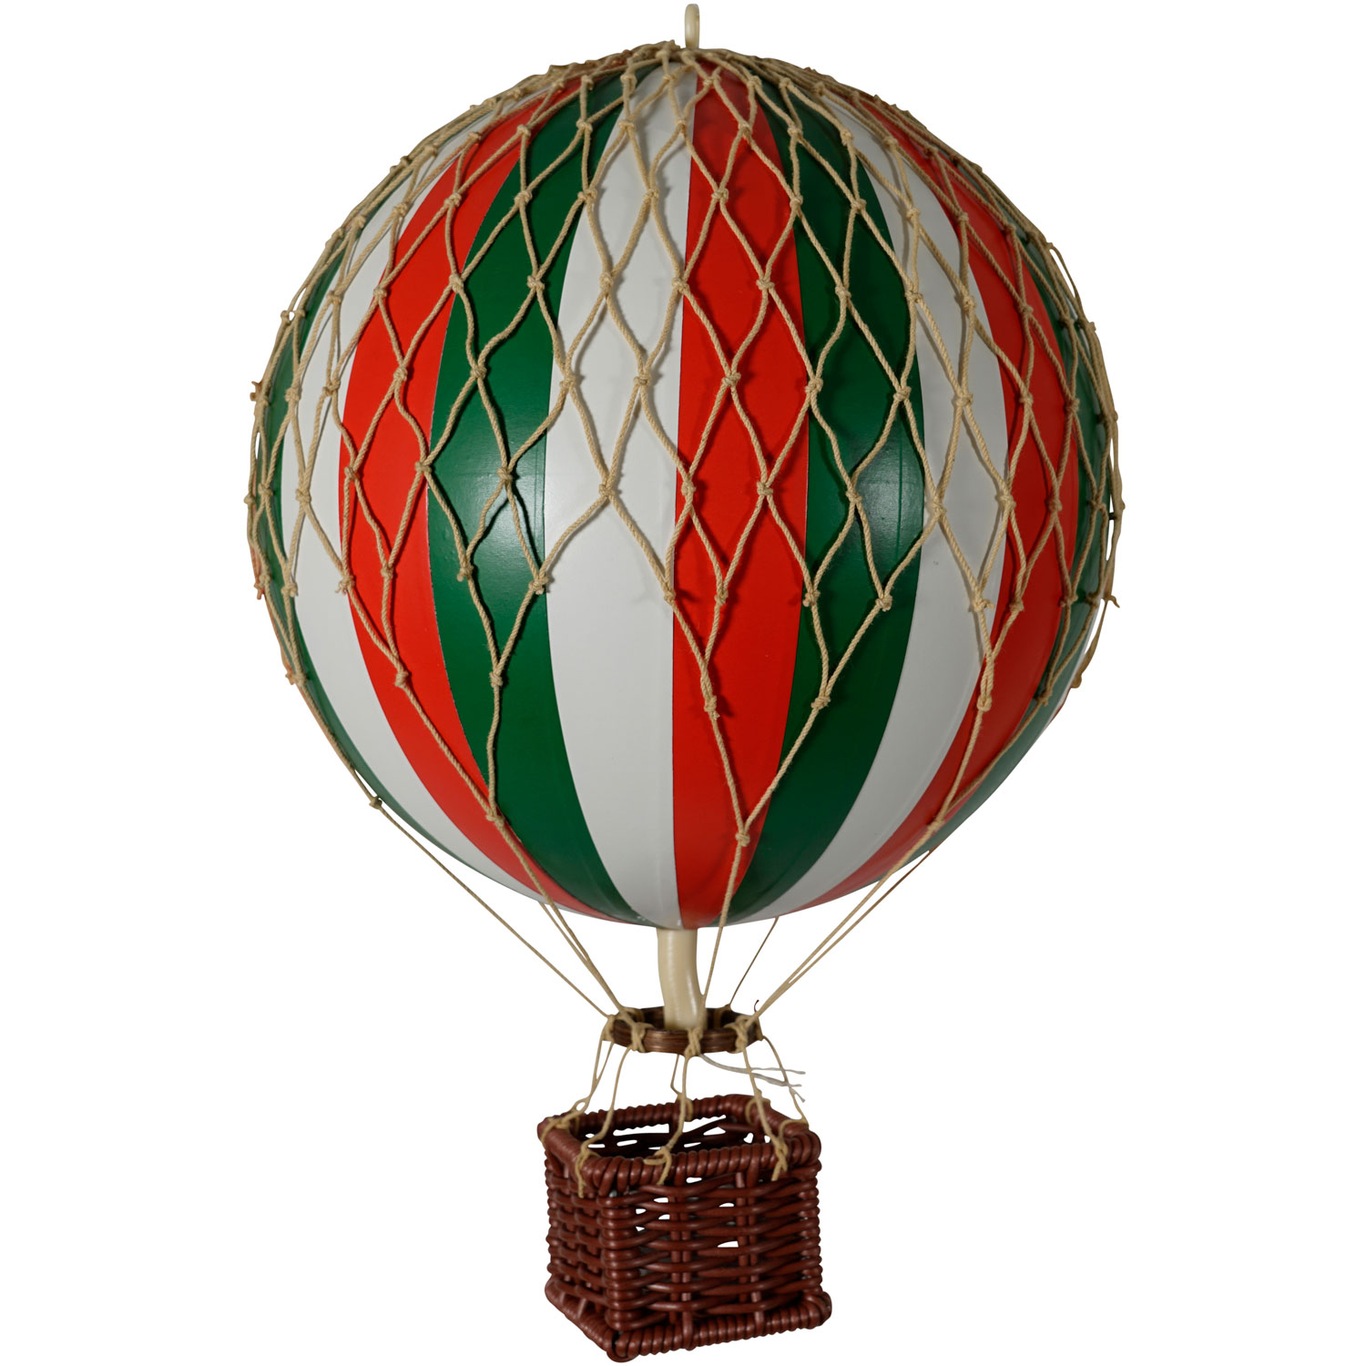 Travels Light Air Balloon 18x30 cm, Tricolore